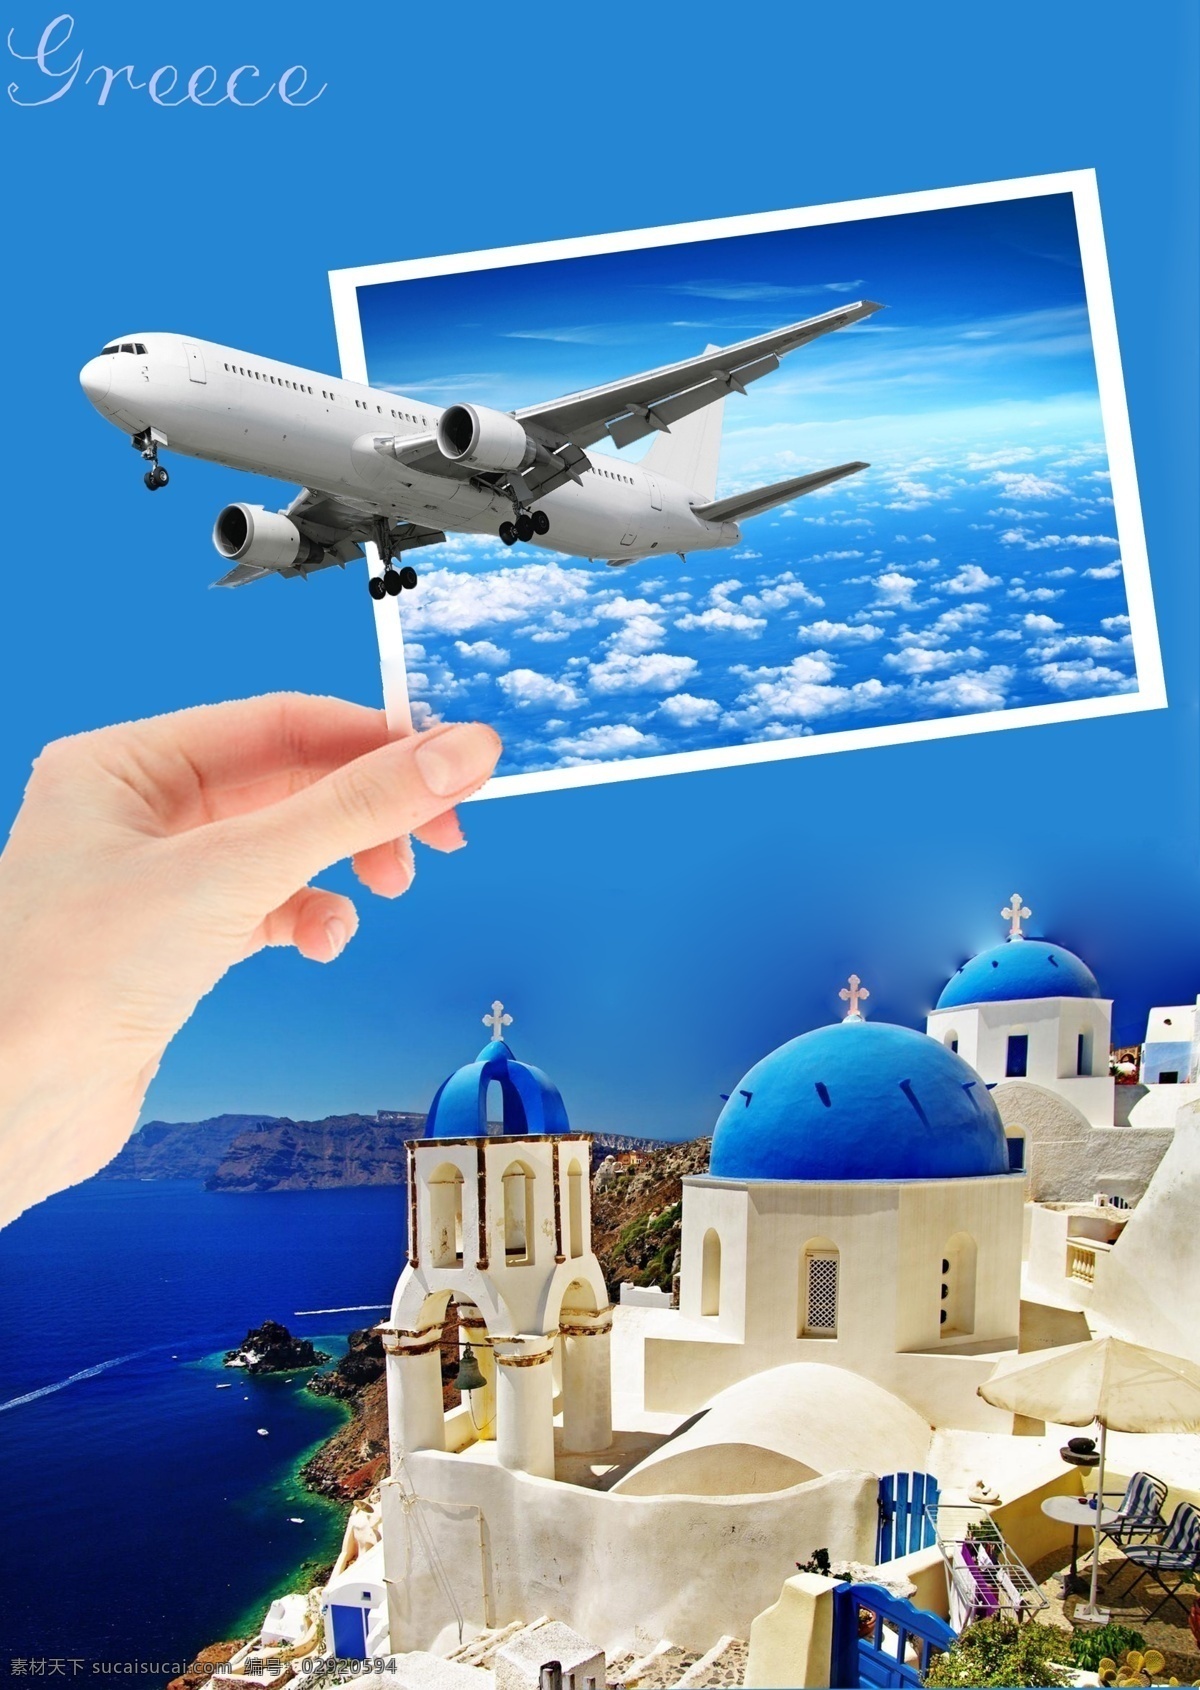 创意海报设计 希腊 圣托里尼 爱琴海 古堡 蓝色 飞机 手指 照片